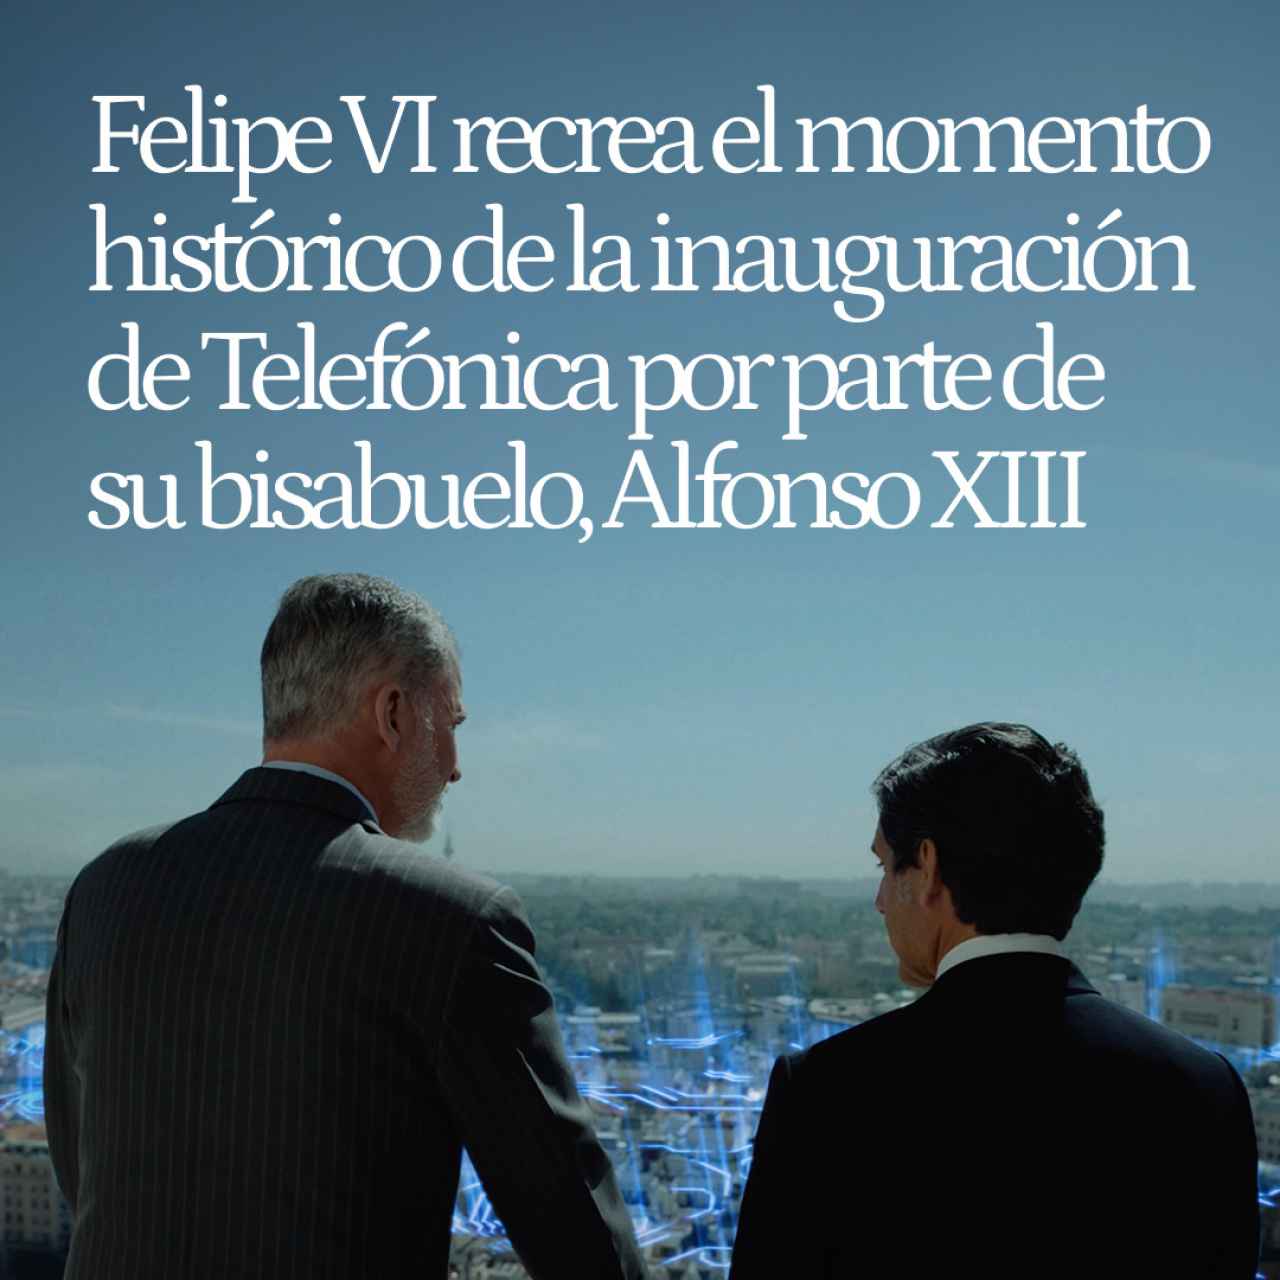 Felipe VI recrea el momento histórico de la inauguración de Telefónica por parte de su bisabuelo, Alfonso XIII